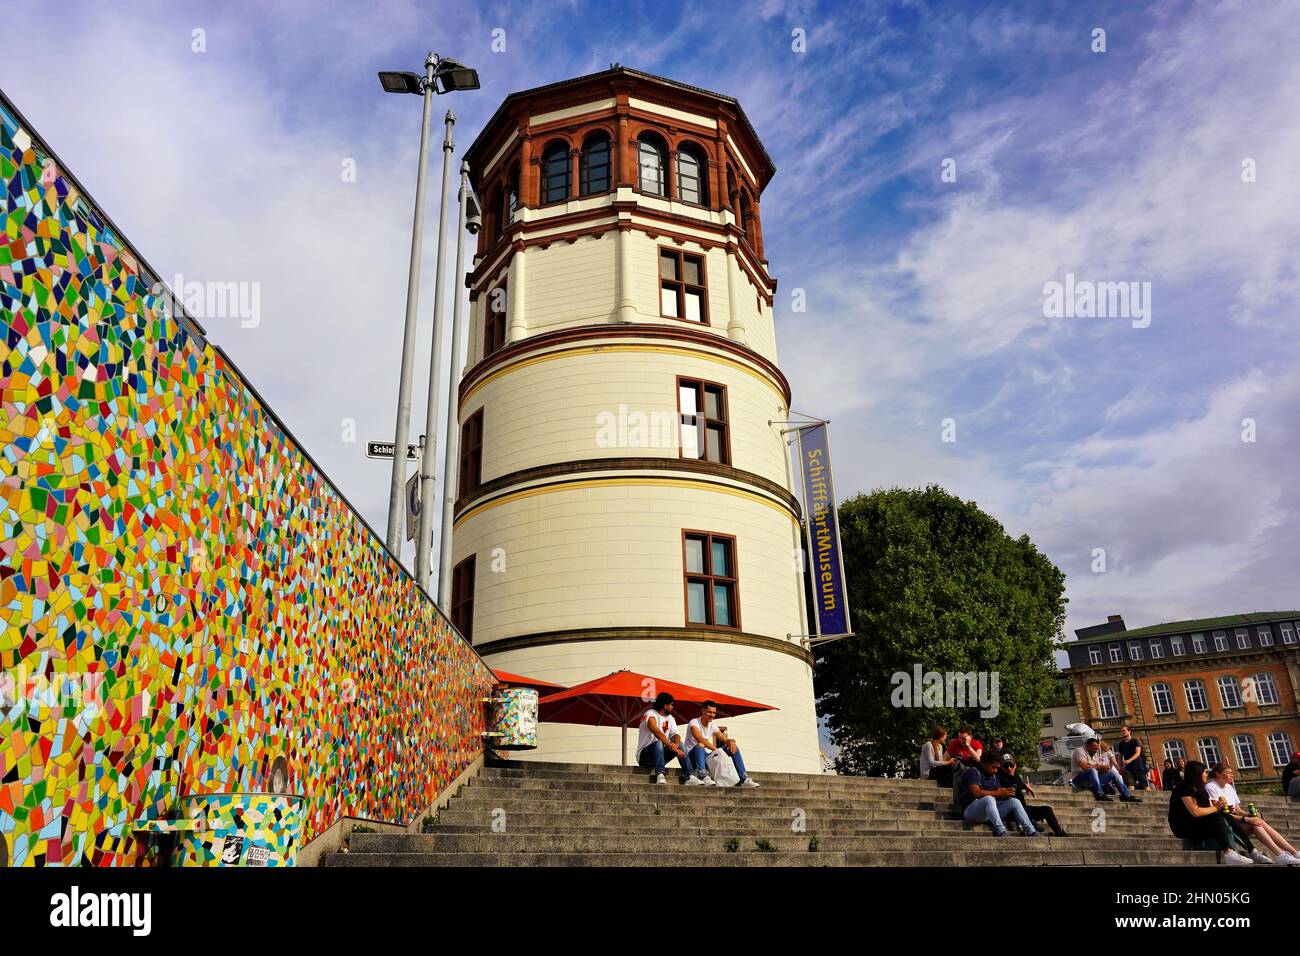 La tour historique du château de Düsseldorf au bord du Rhin, qui est aujourd'hui un musée maritime. Sur le côté gauche : mur de mosaïque par Hermann-Josef Kuhna. Banque D'Images